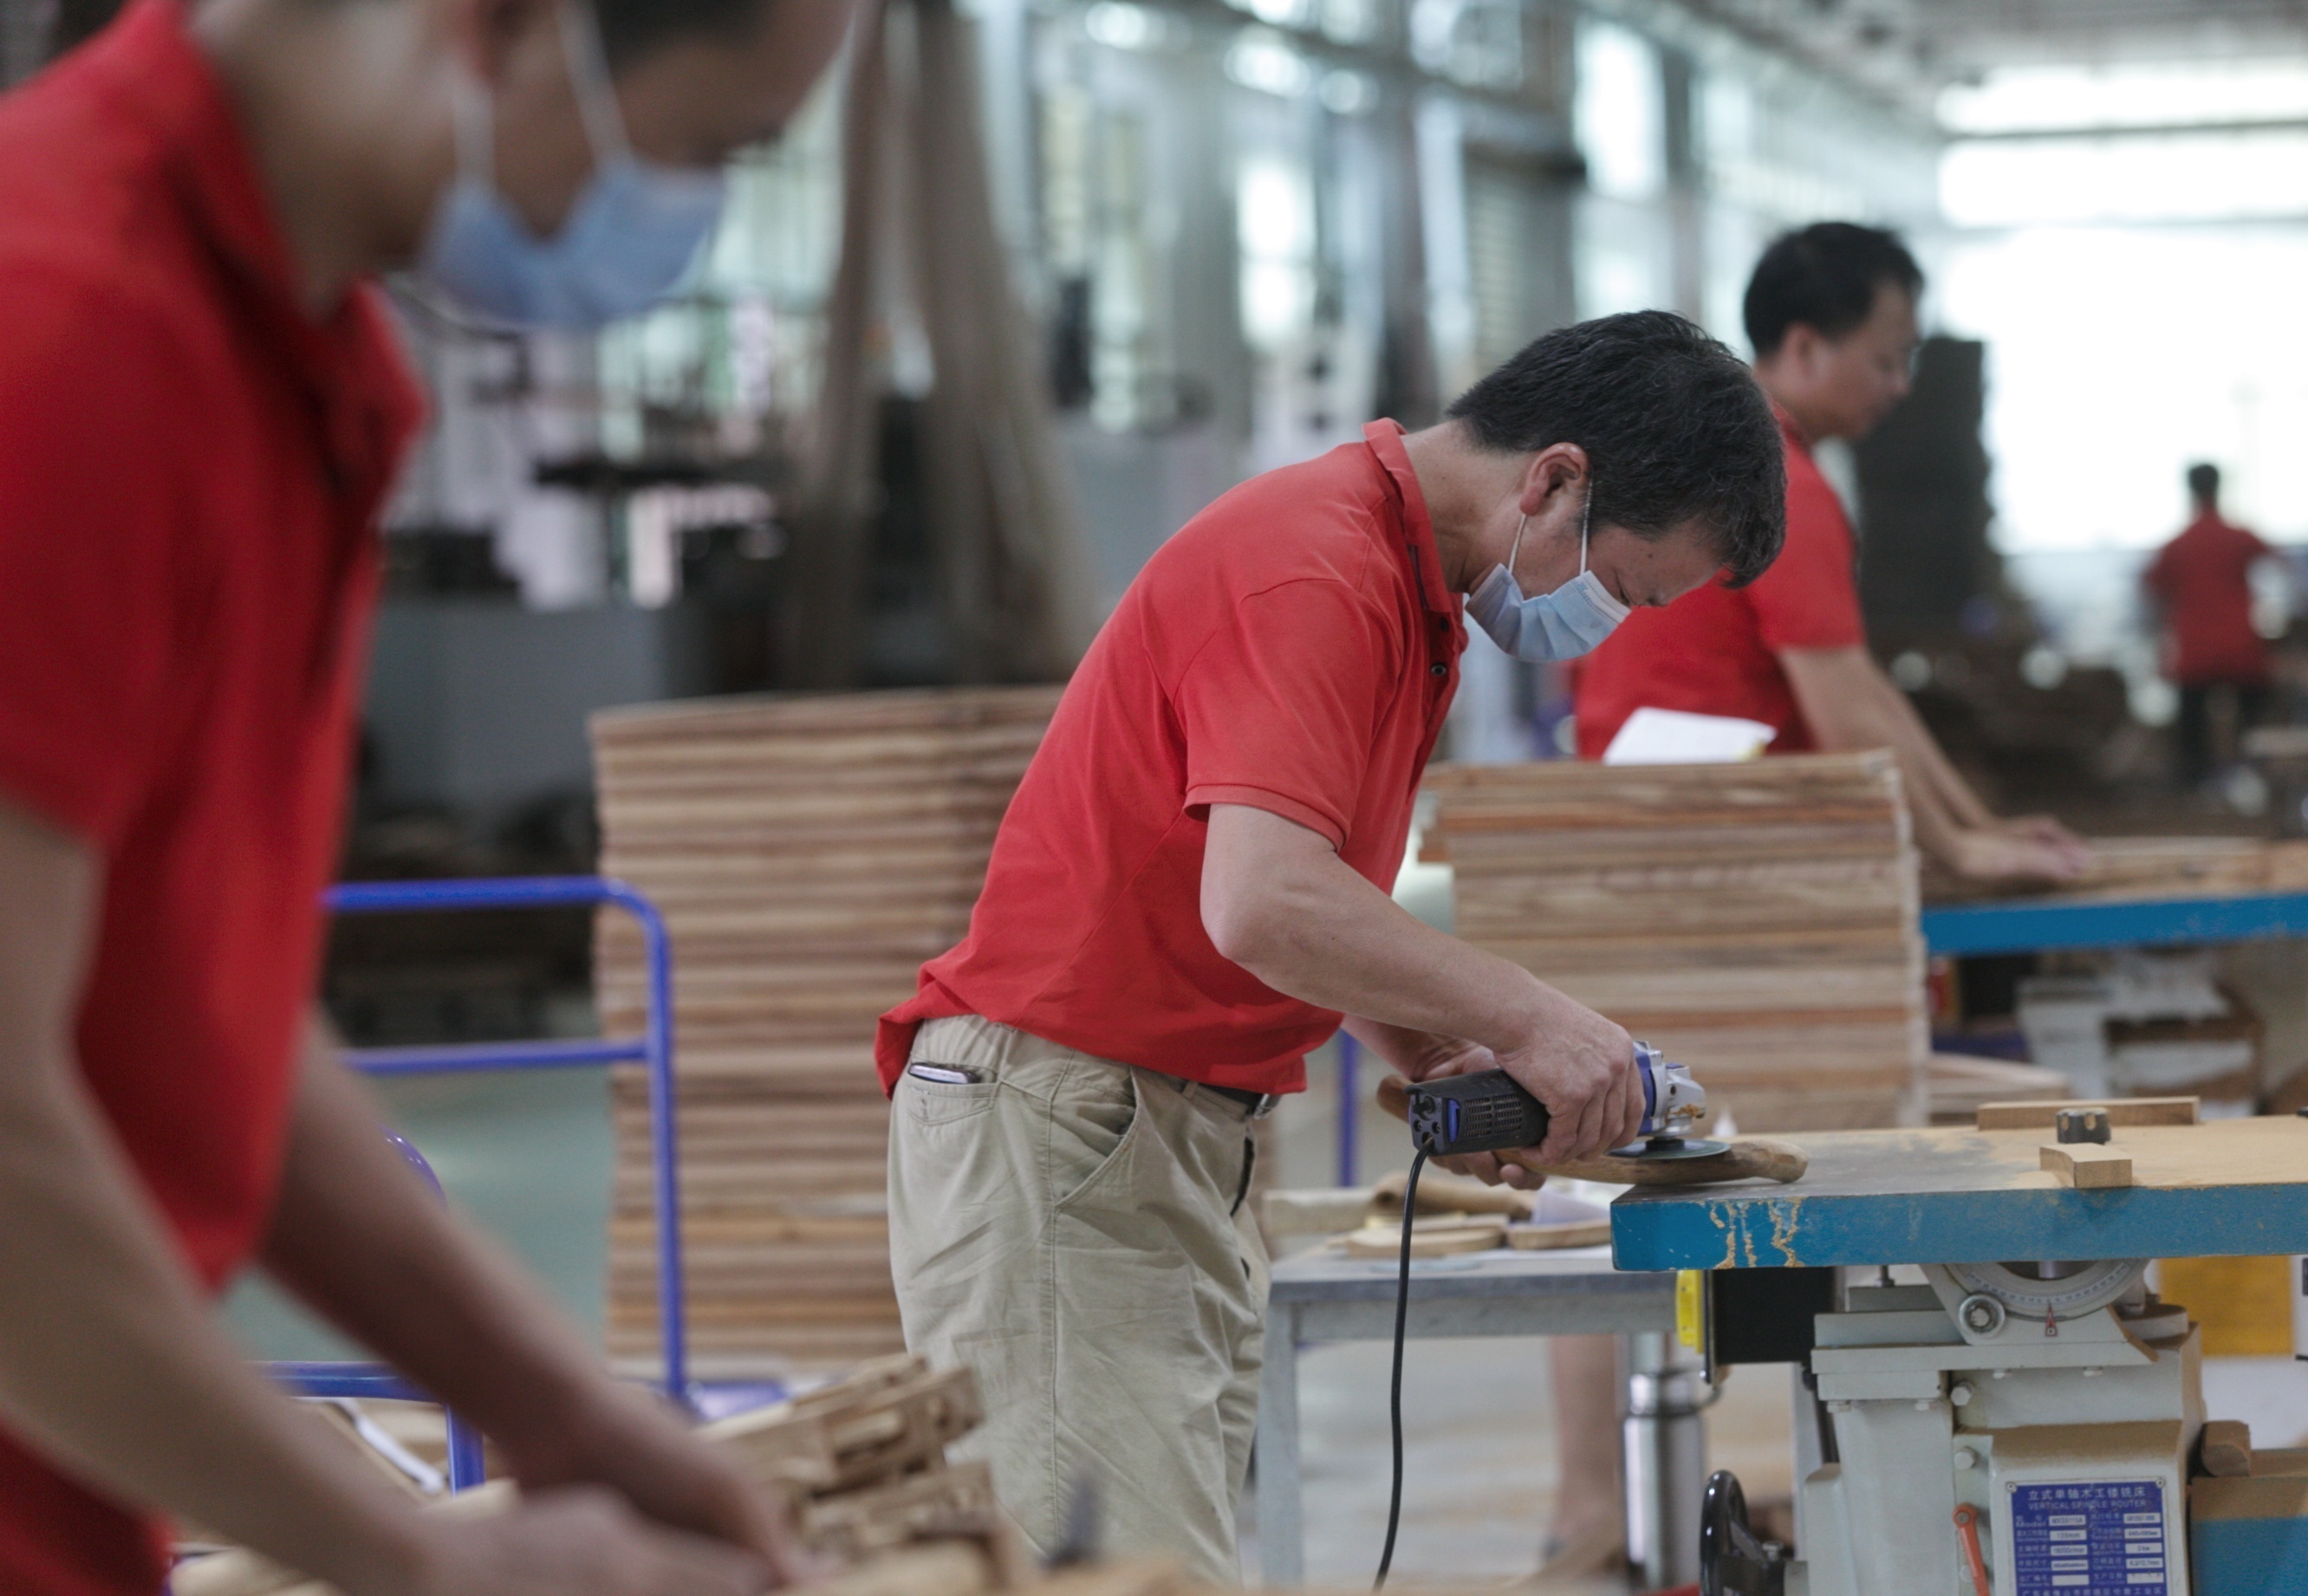 五华东成家具有限公司解决当地300多名闲置劳动力就业问题 南方日报记者石磊摄影